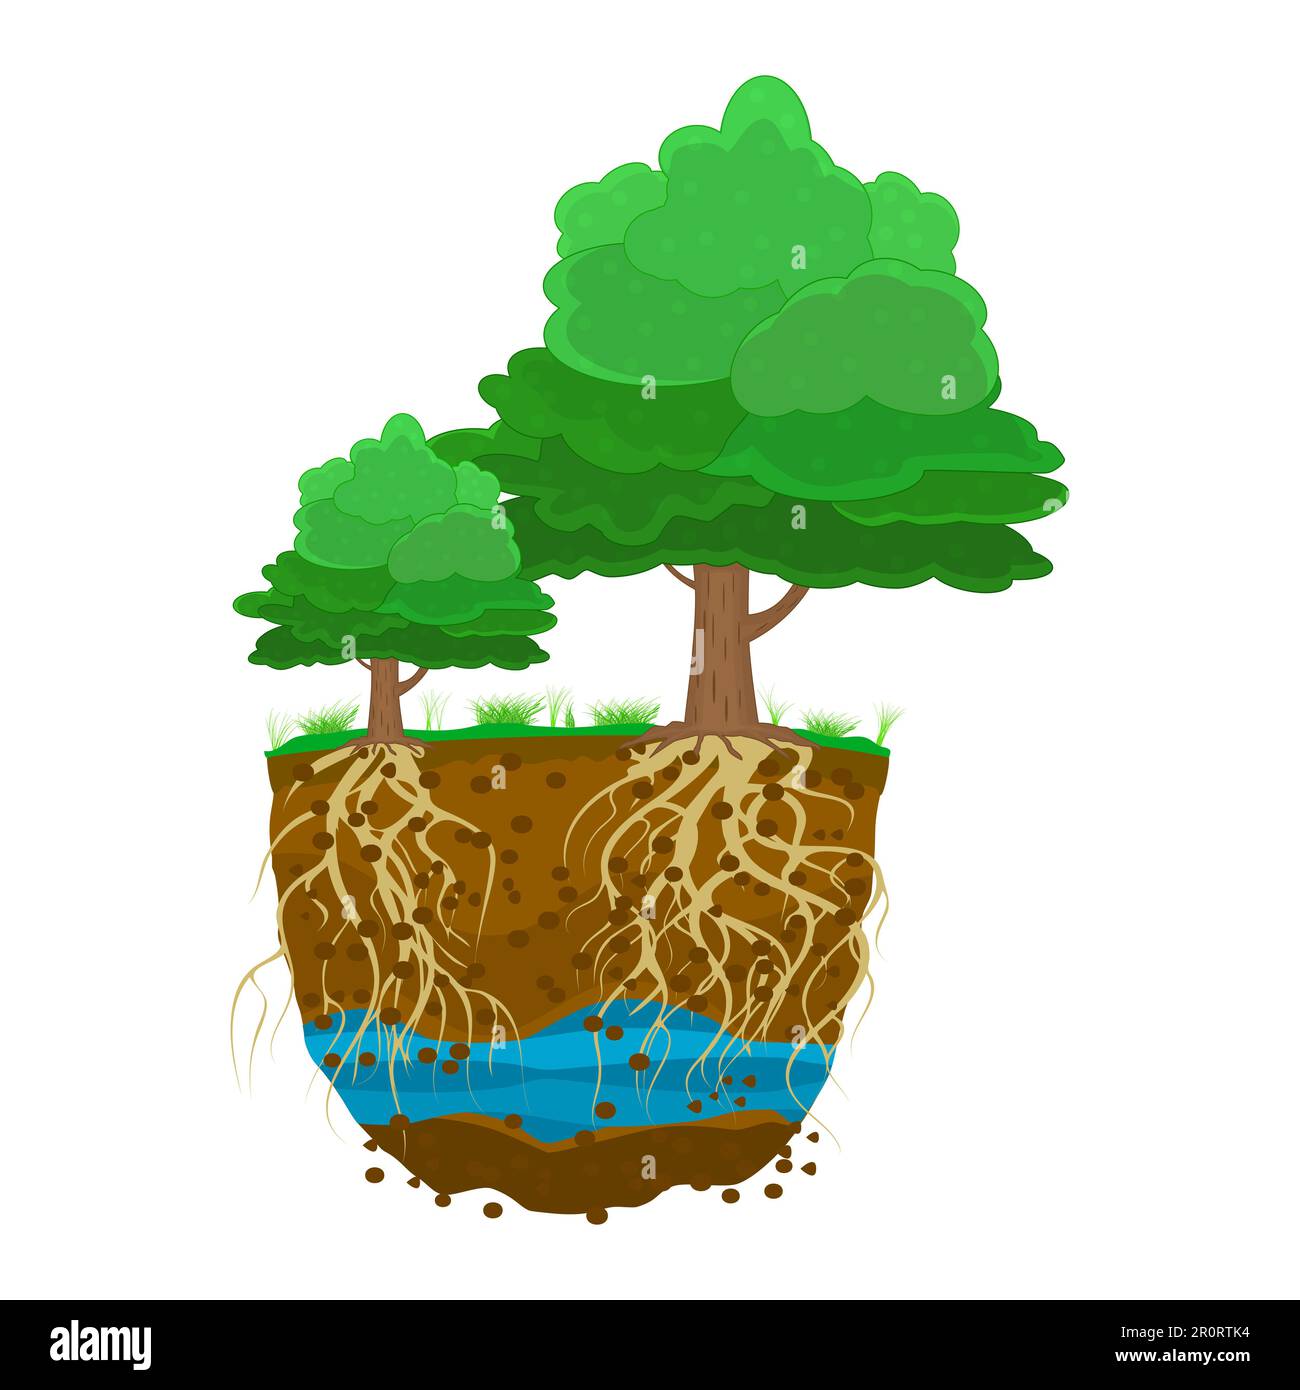 Bäume mit Wurzelsystem im Boden. Pflanzen mit starken Wurzeln. Schmutzschichten, Wasser, Wurzel. Querschnitt des Grundes. Unterirdische Schichten von Erde und Grundwasser Stock Vektor